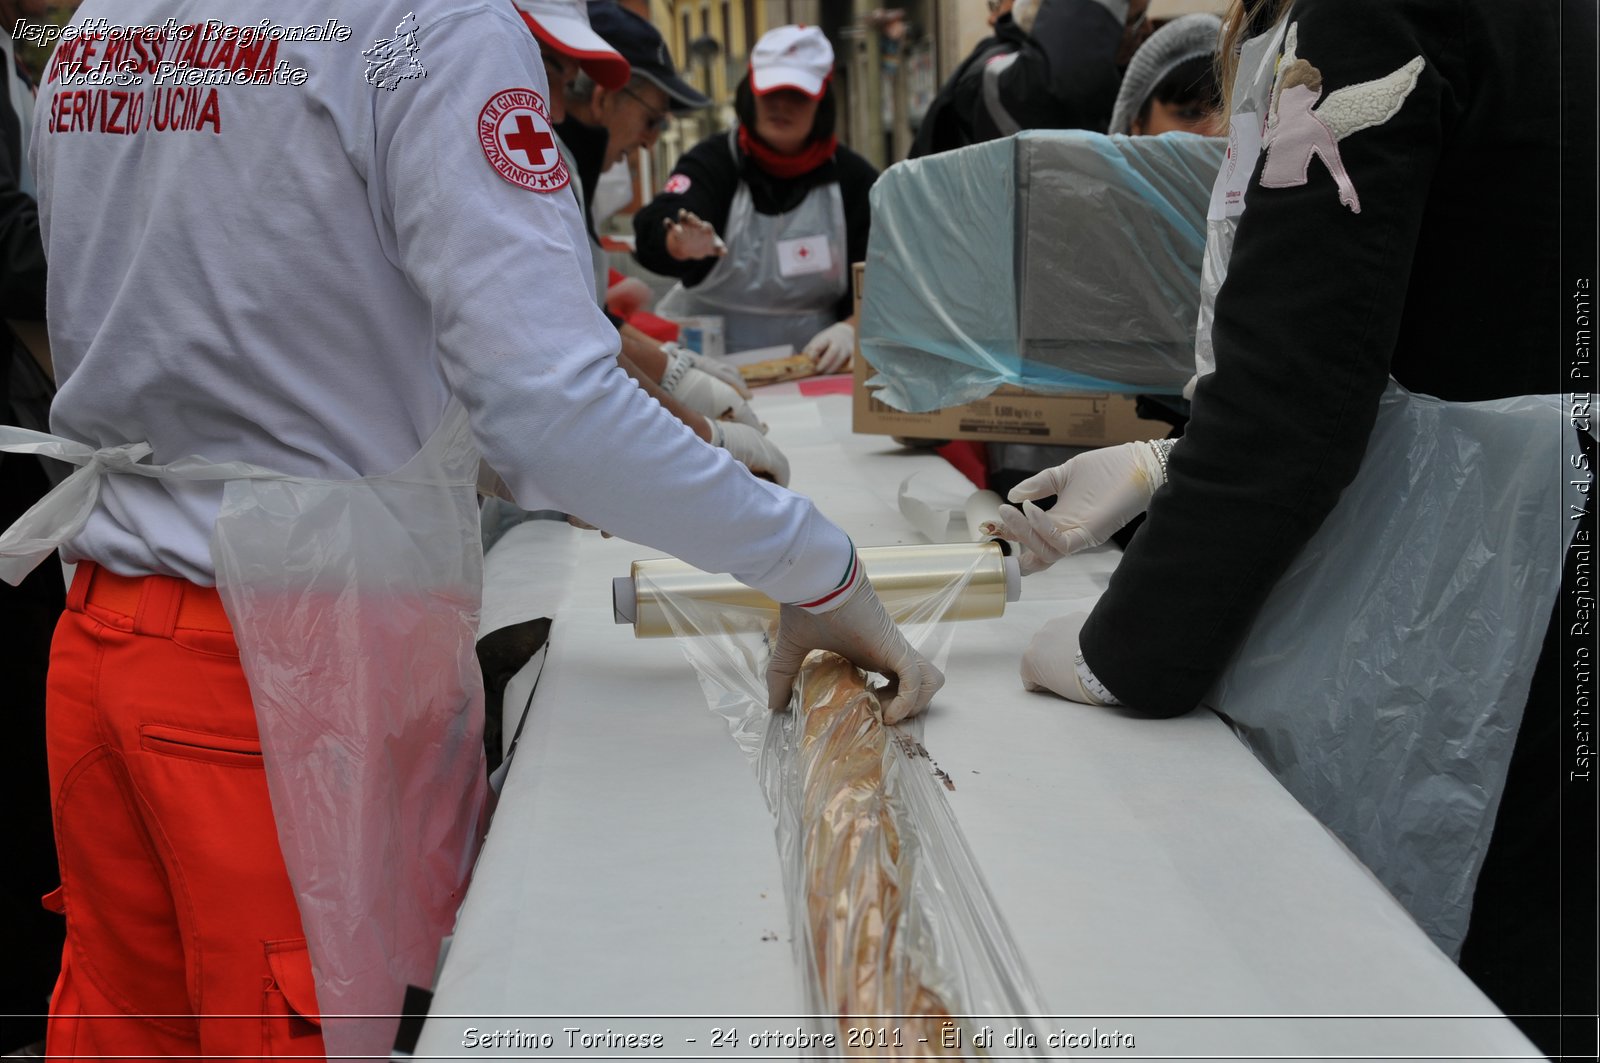 Settimo Torinese  - 24 ottobre 2011 - l d dla cicolata -  Croce Rossa Italiana - Ispettorato Regionale Volontari del Soccorso Piemonte